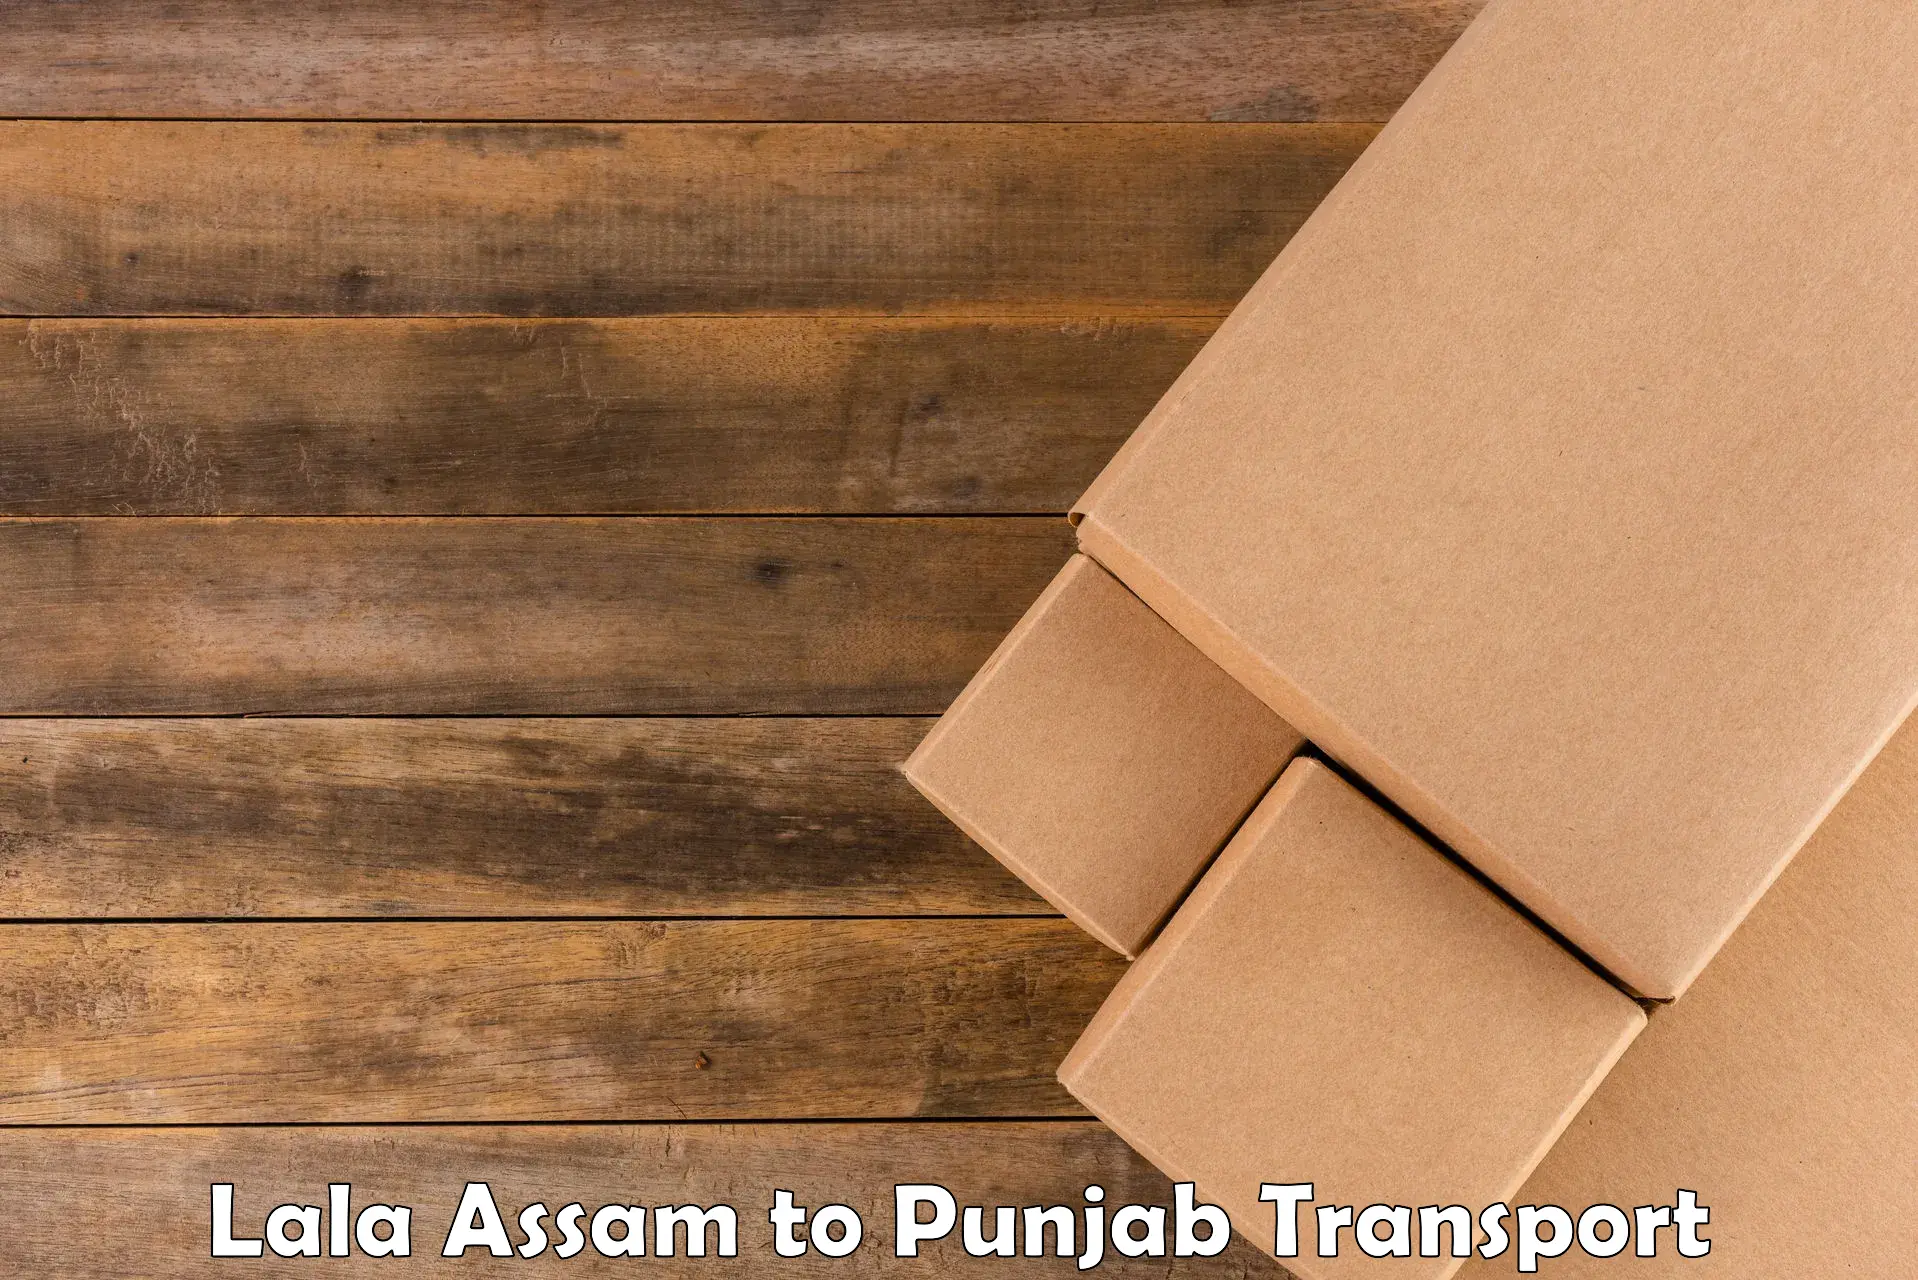 Nearest transport service Lala Assam to Rupnagar